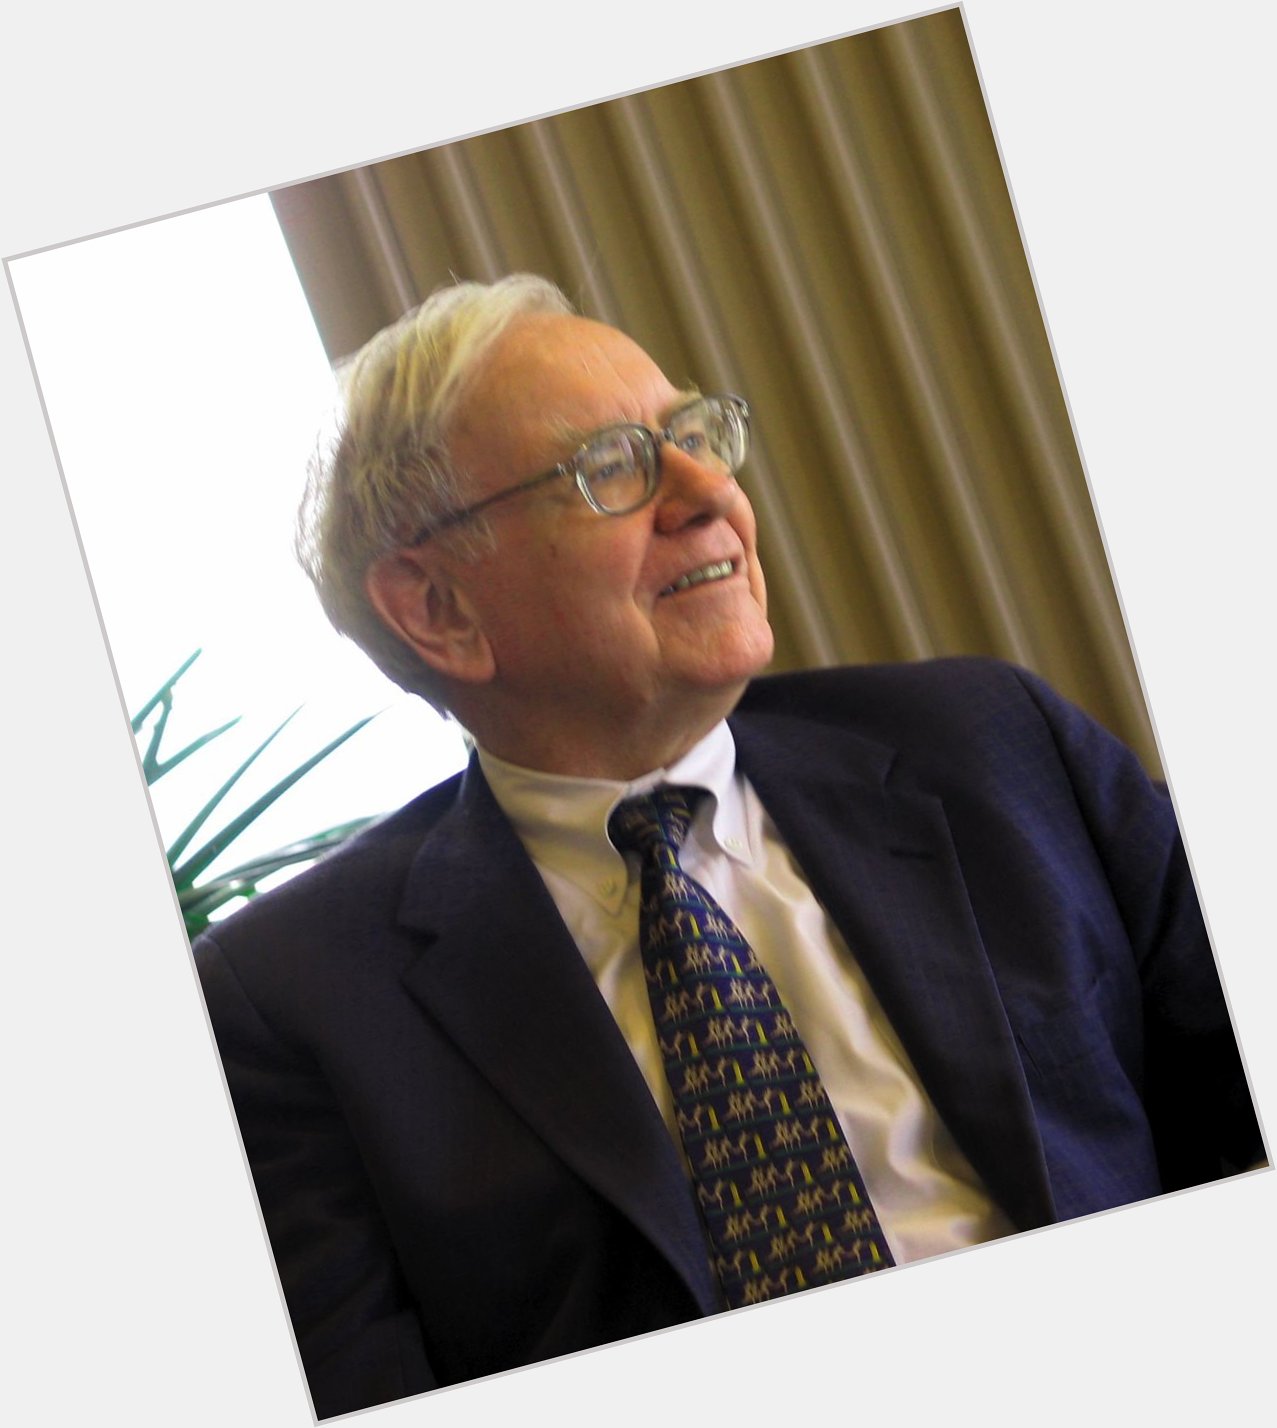 Happy birthday to the OG of value investing! 

Mr. Warren Buffett! 